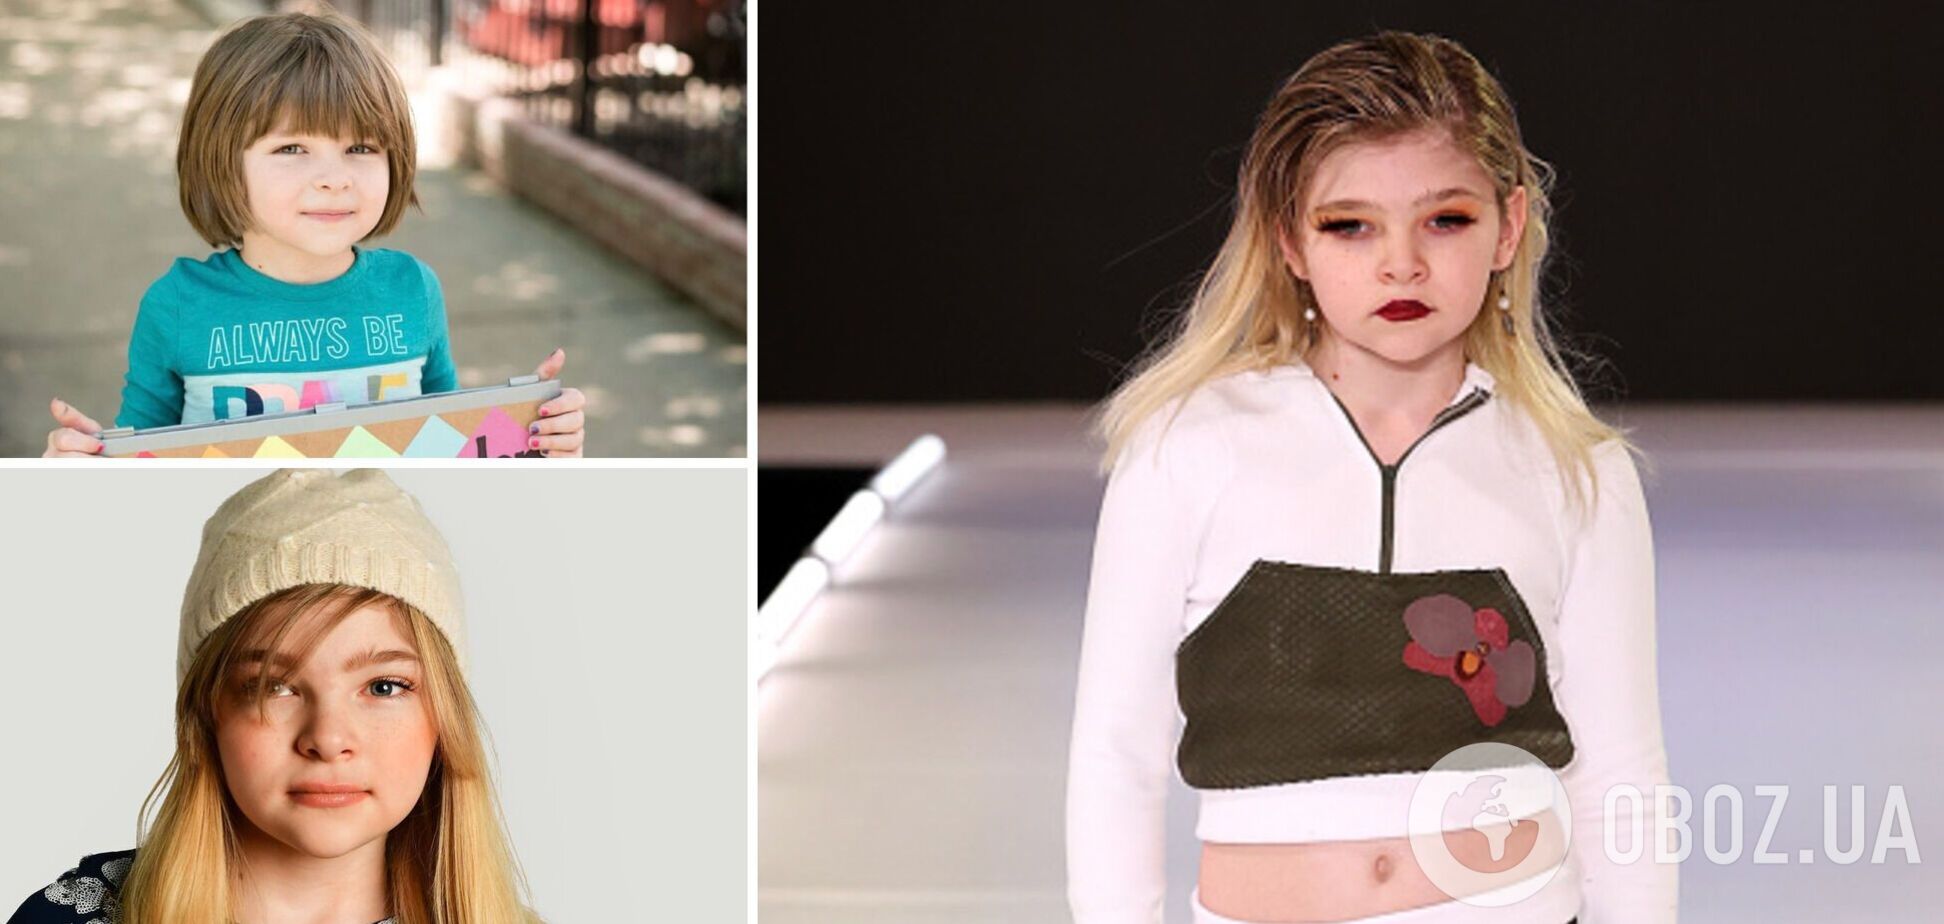 10-летняя модель-трансгендер стала самой молодой моделью на Неделе моды в Нью-Йорке. Фото